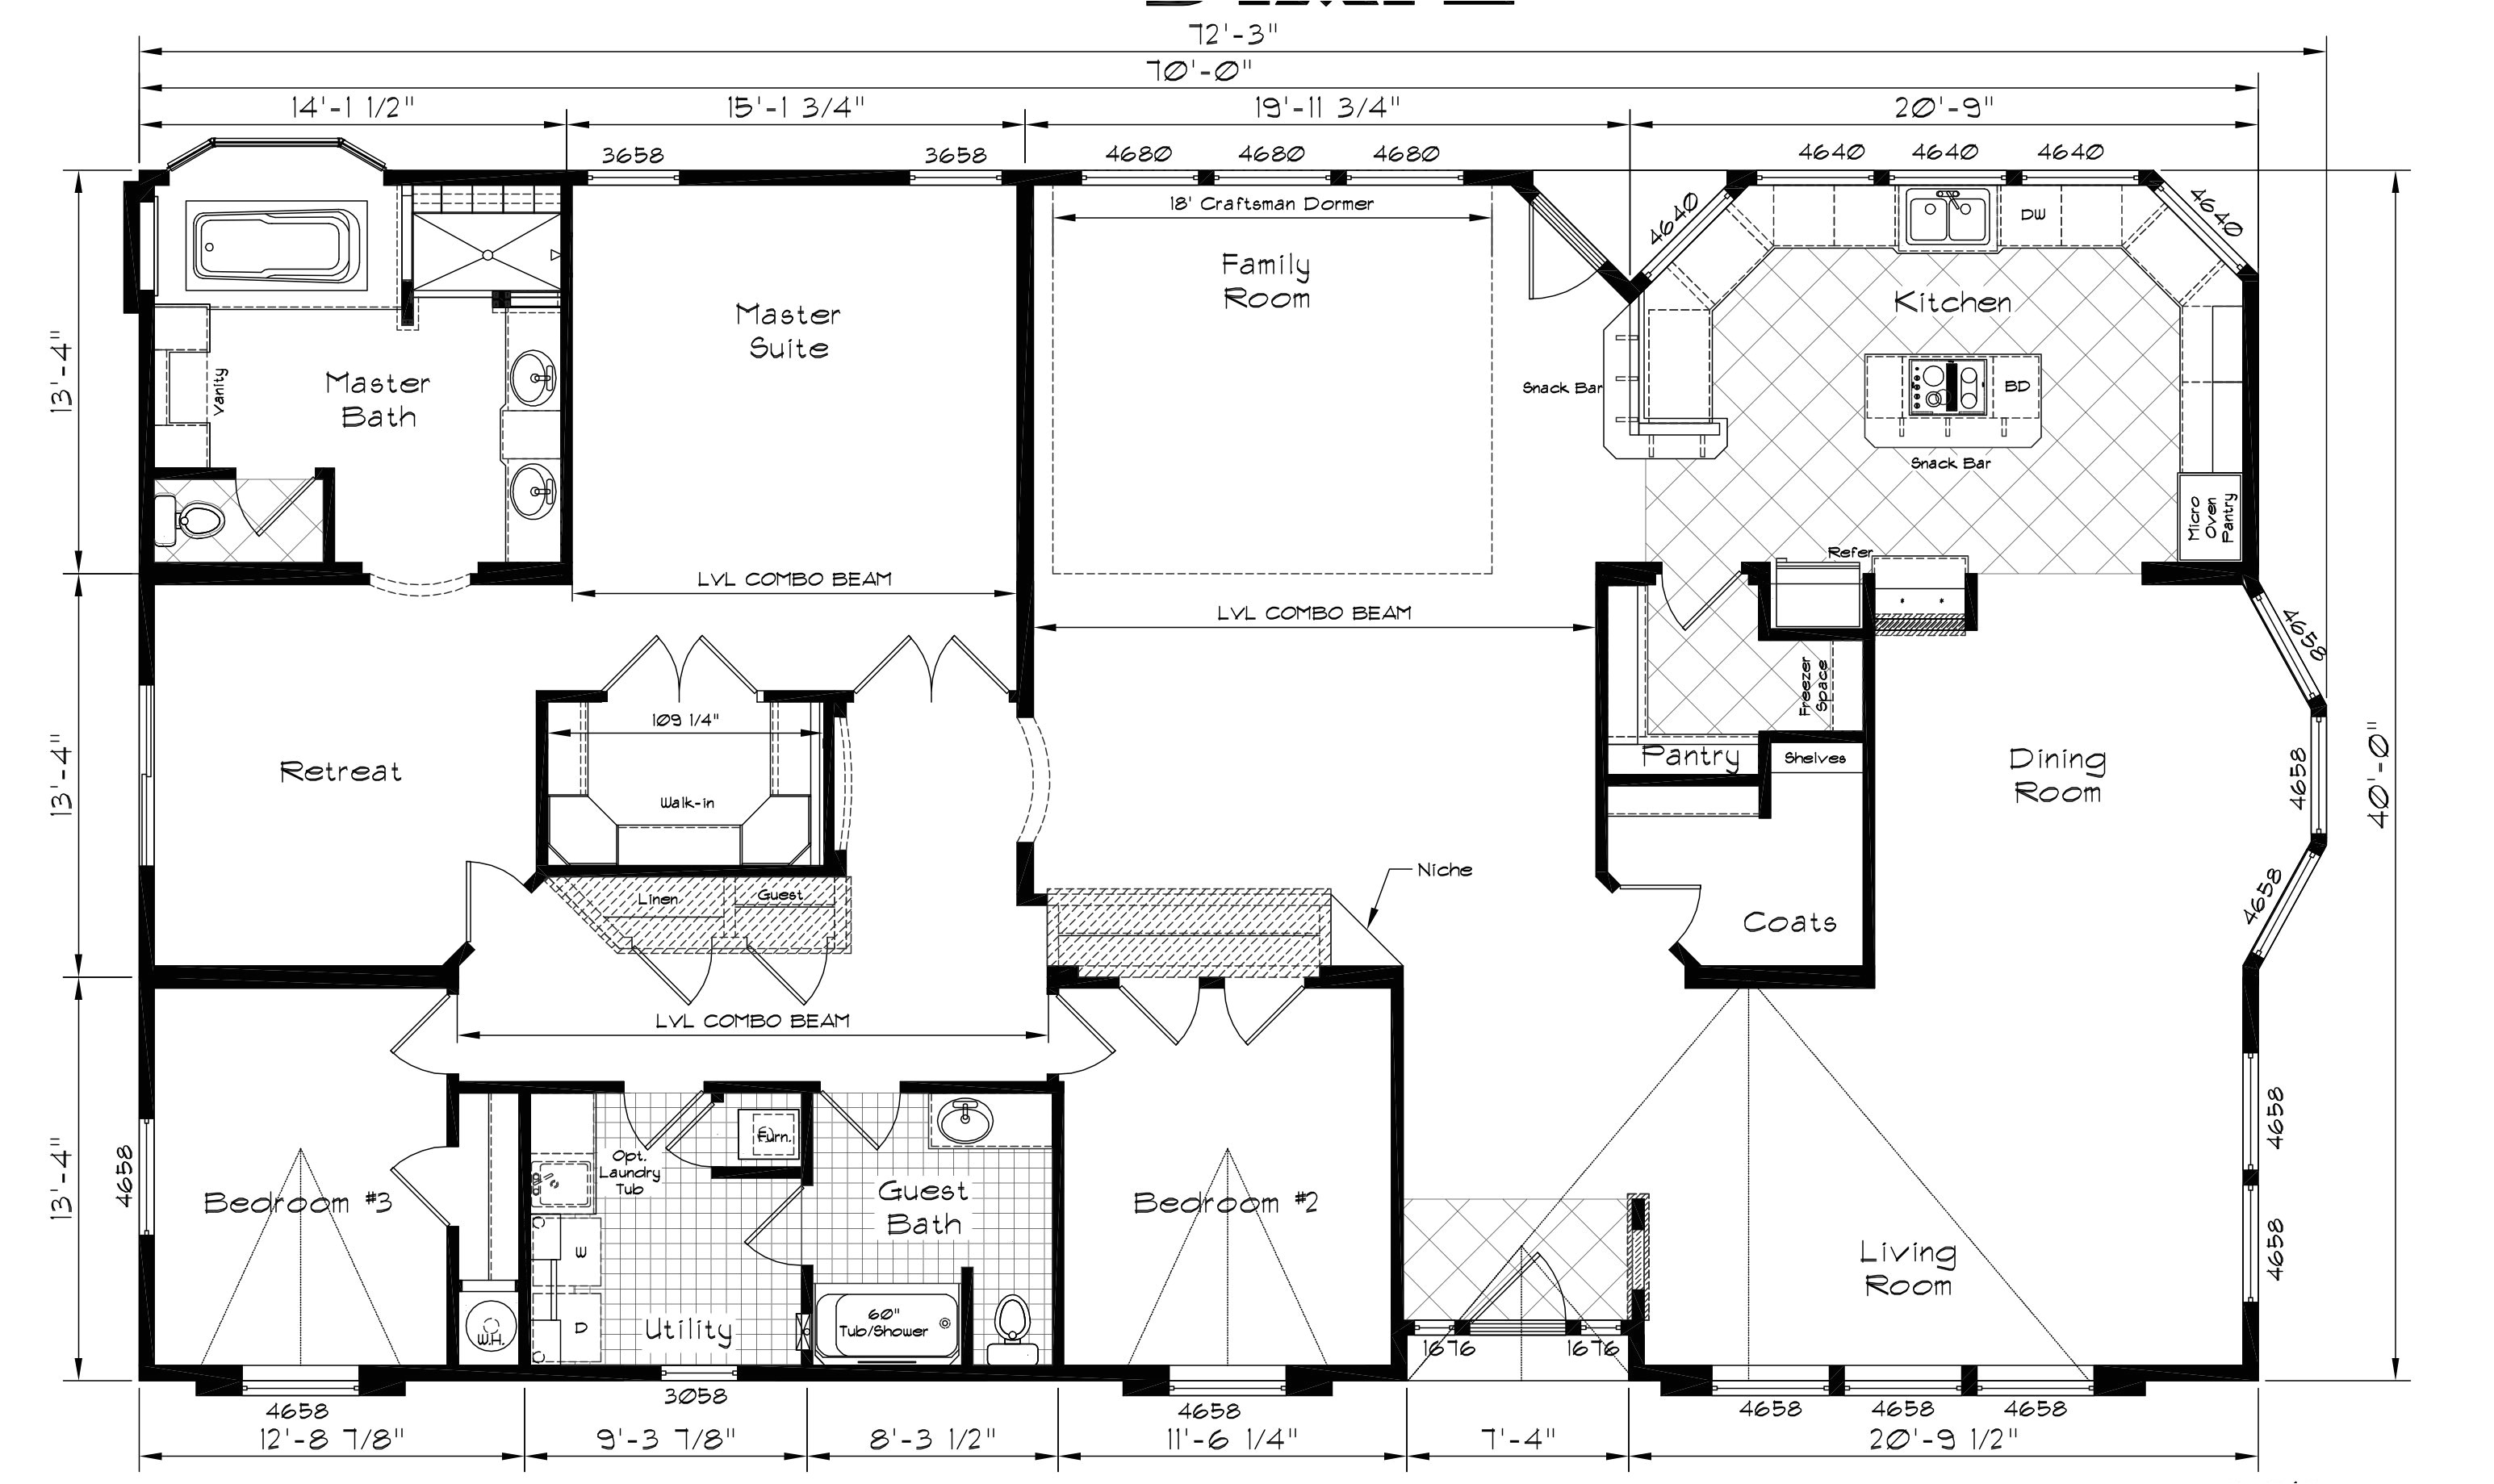 Marlette Manufactured Homes Floor Plans Best Of Marlette Homes Floor Plans New Home Plans Design